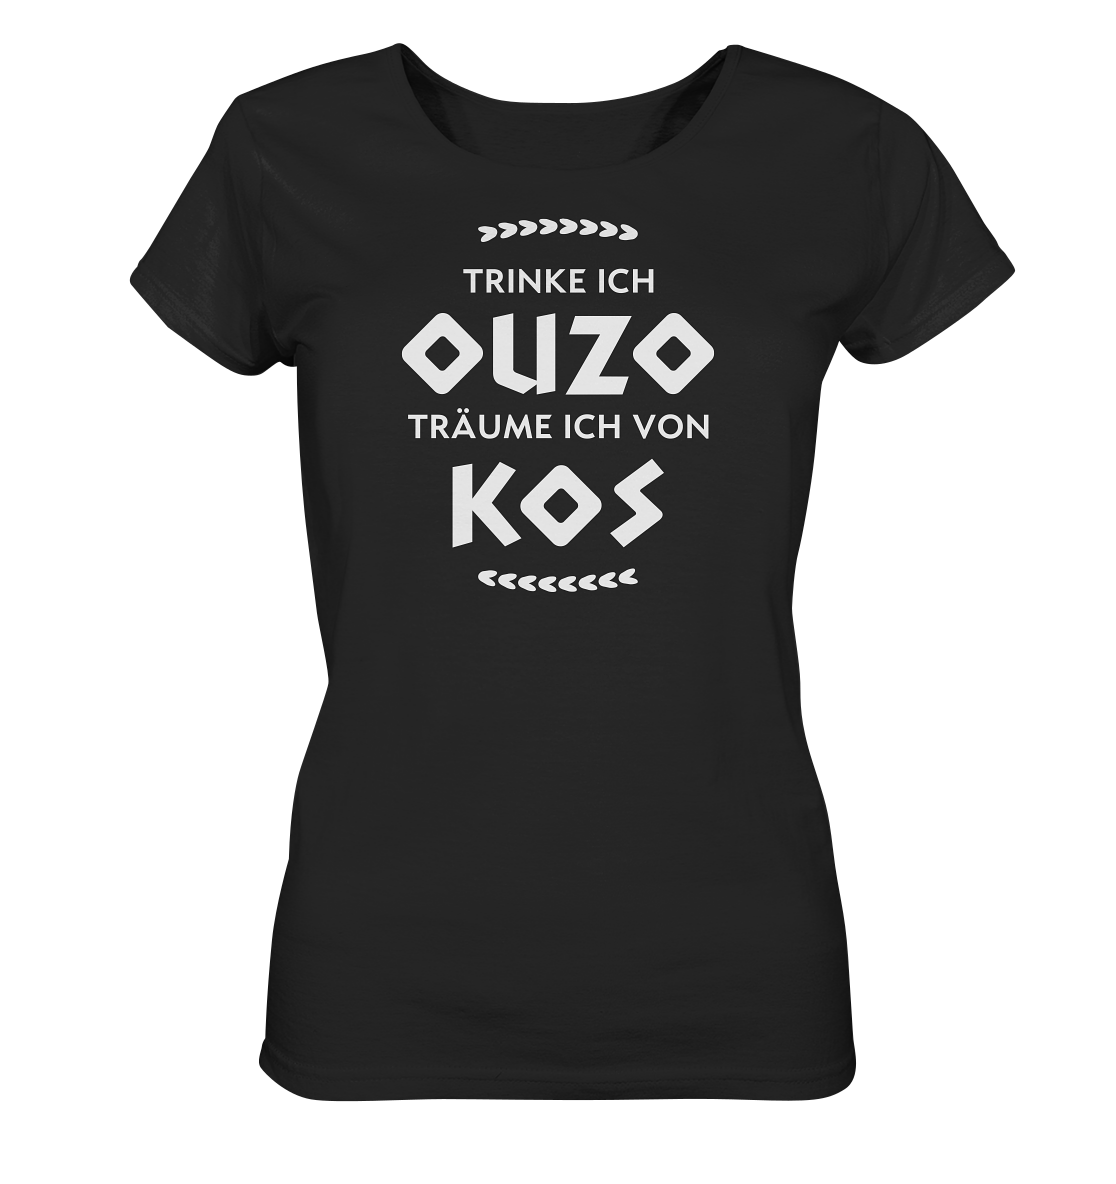 Trinke ich Ouzo träume ich von Kos - Ladies Organic Shirt